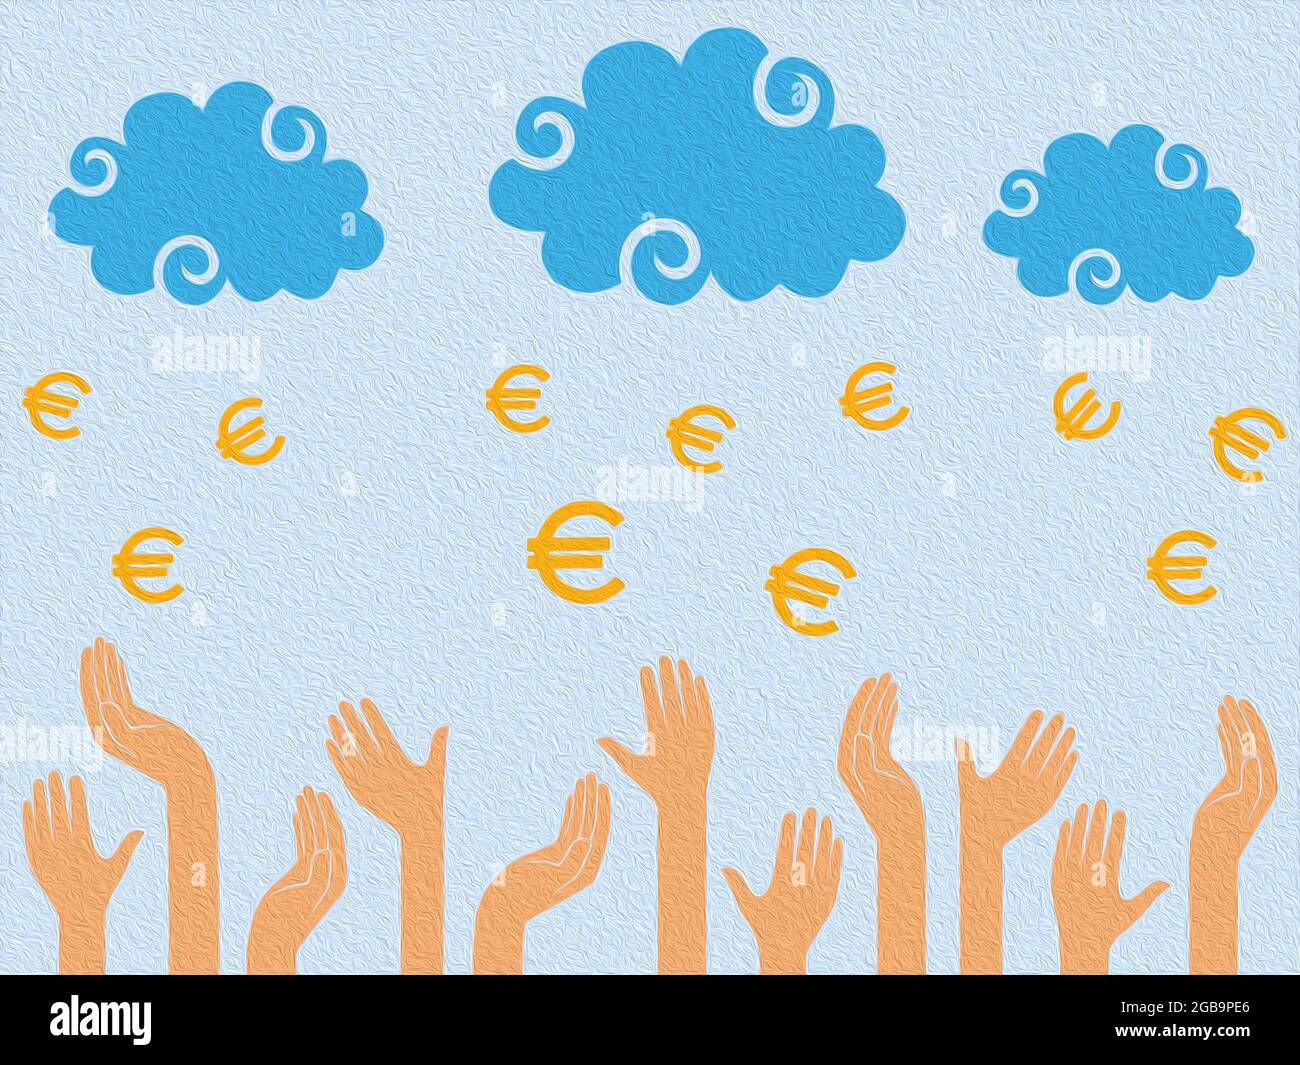 Euro argent tombant des nuages dans les mains humaines, illustration stylisée conceptuelle colorée Banque D'Images